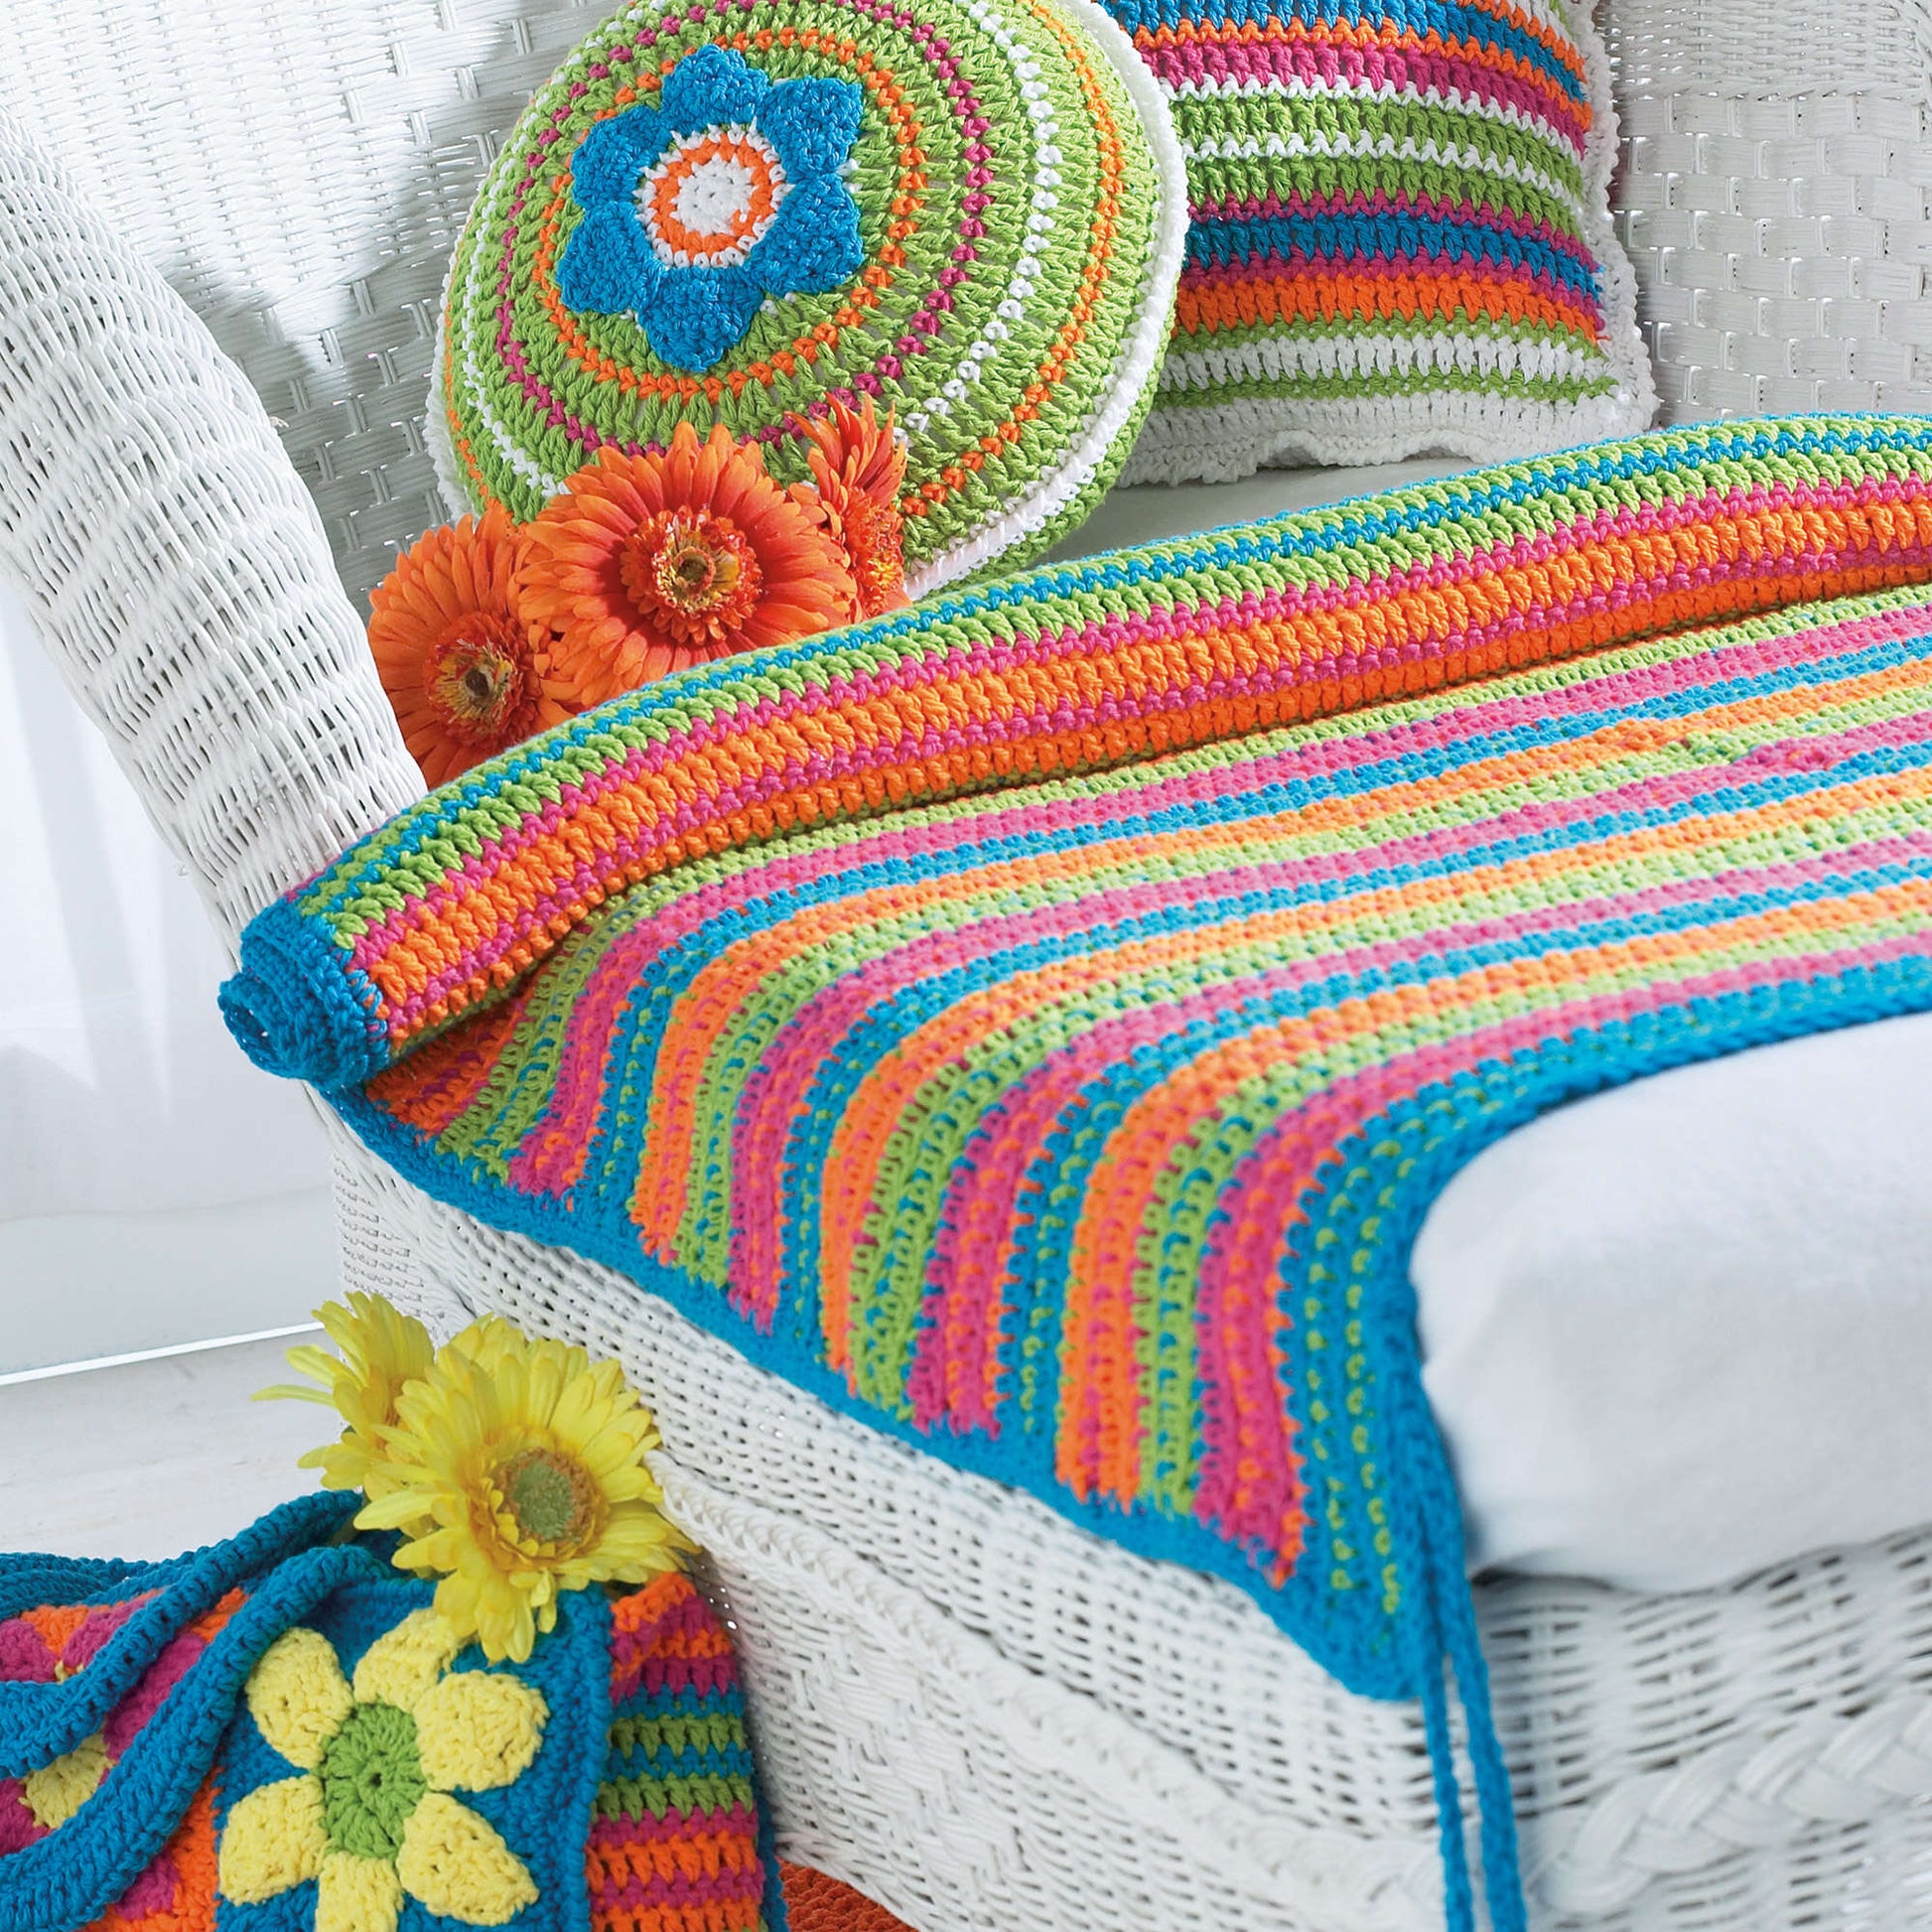 Bernat Beach Mat Crochet Accessory made in Bernat Handicrafter Cotton yarn